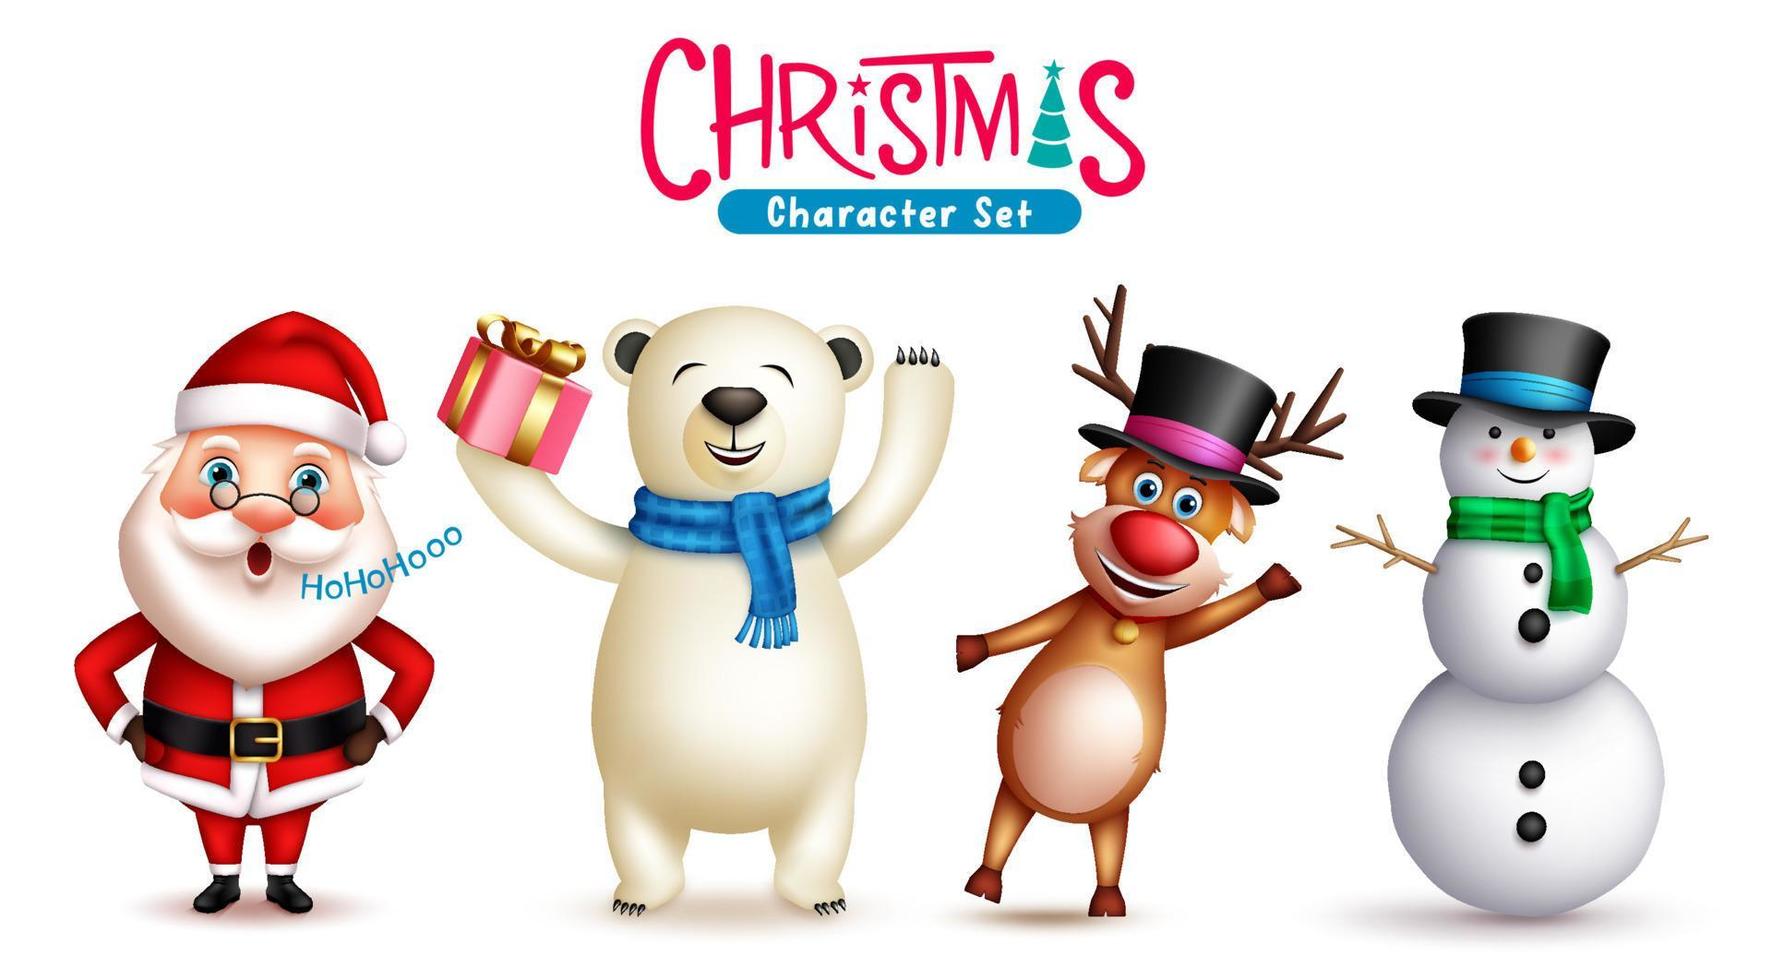 conjunto de vectores de caracteres navideños. santa claus, muñeco de nieve, renos y osos polares personajes navideños aislados en fondo blanco para la colección de diseño gráfico navideño. ilustración vectorial